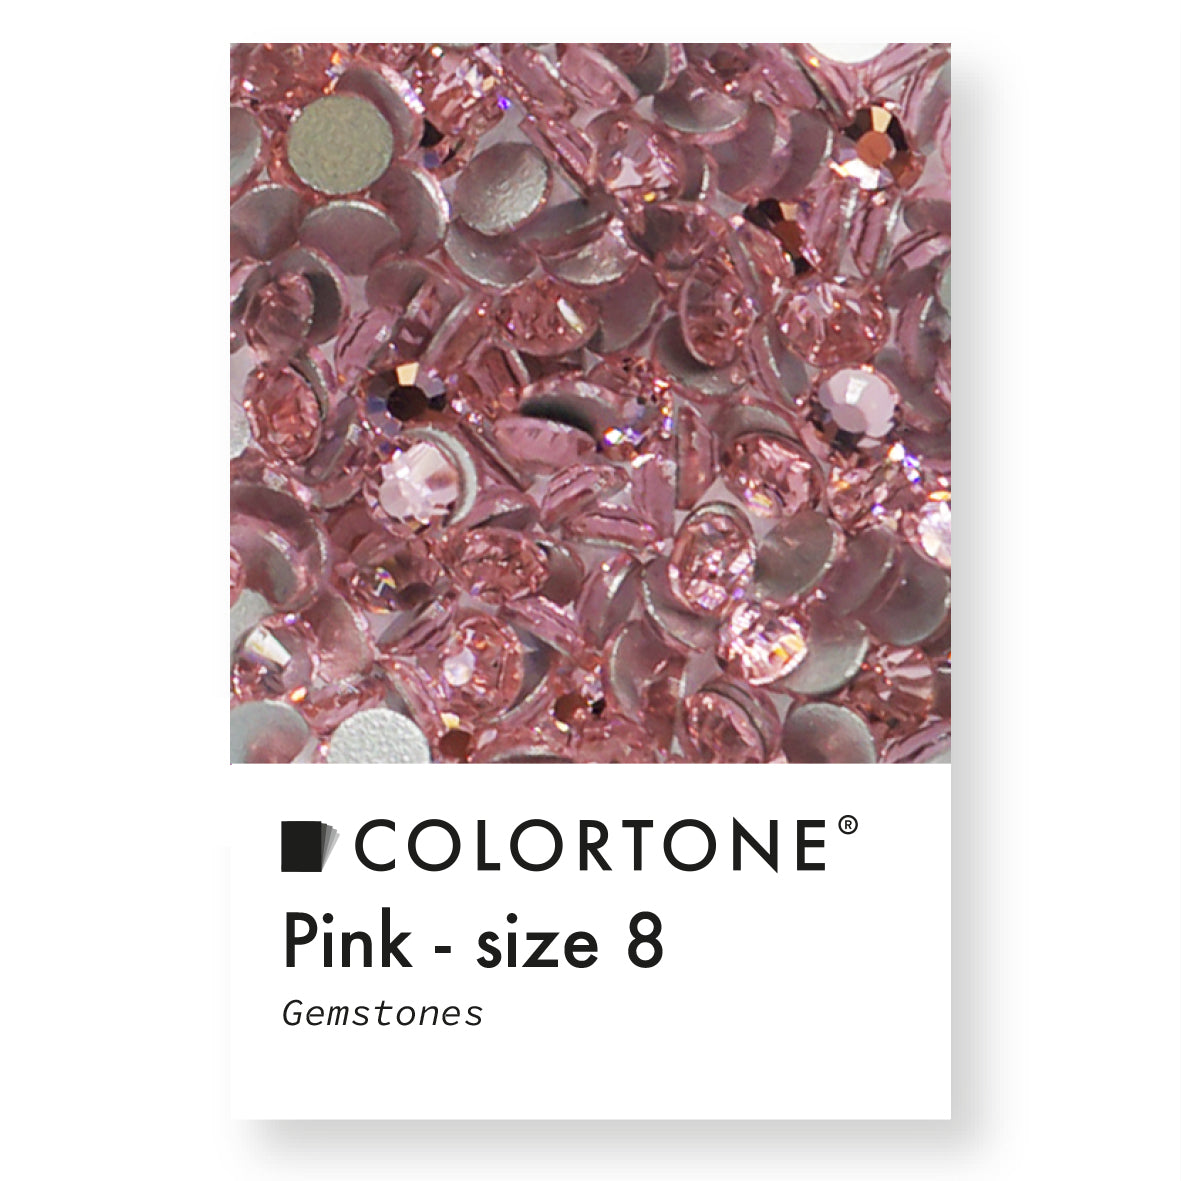 Pink Gemstones - Size 8